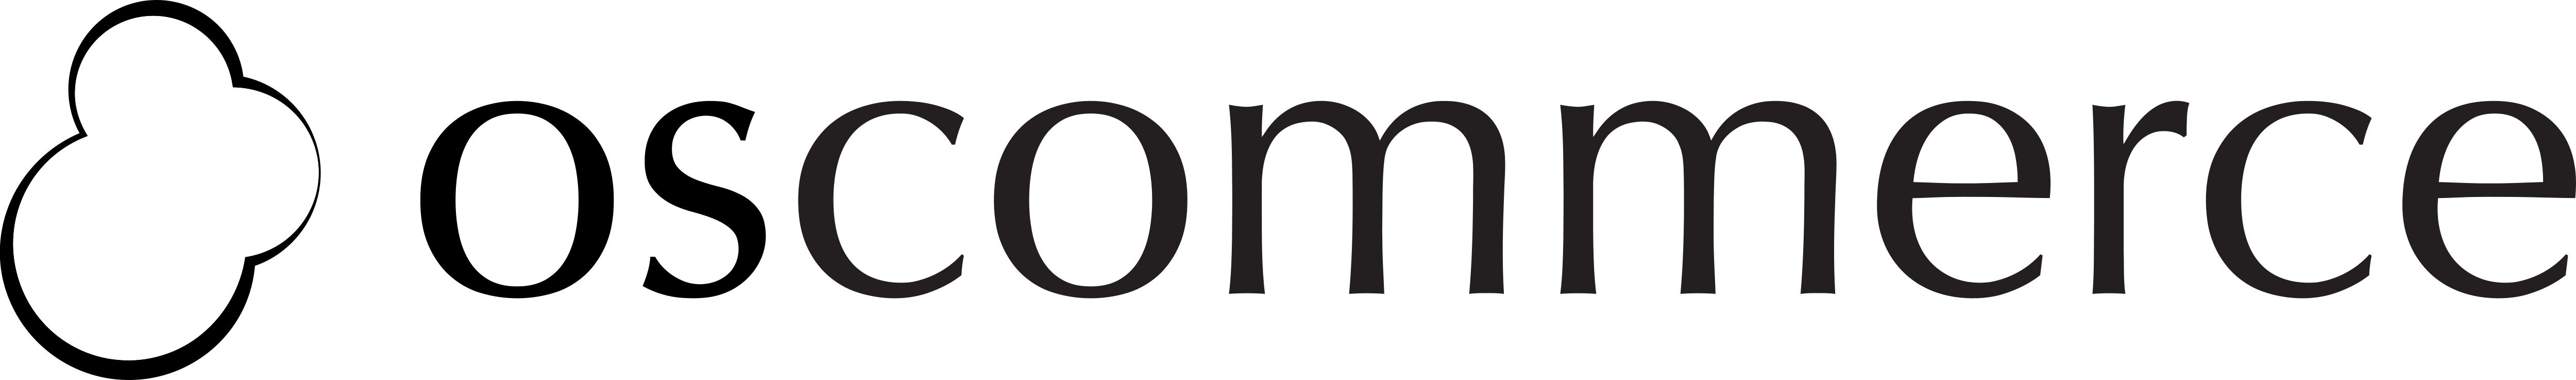 OSCommerce_Logo.png